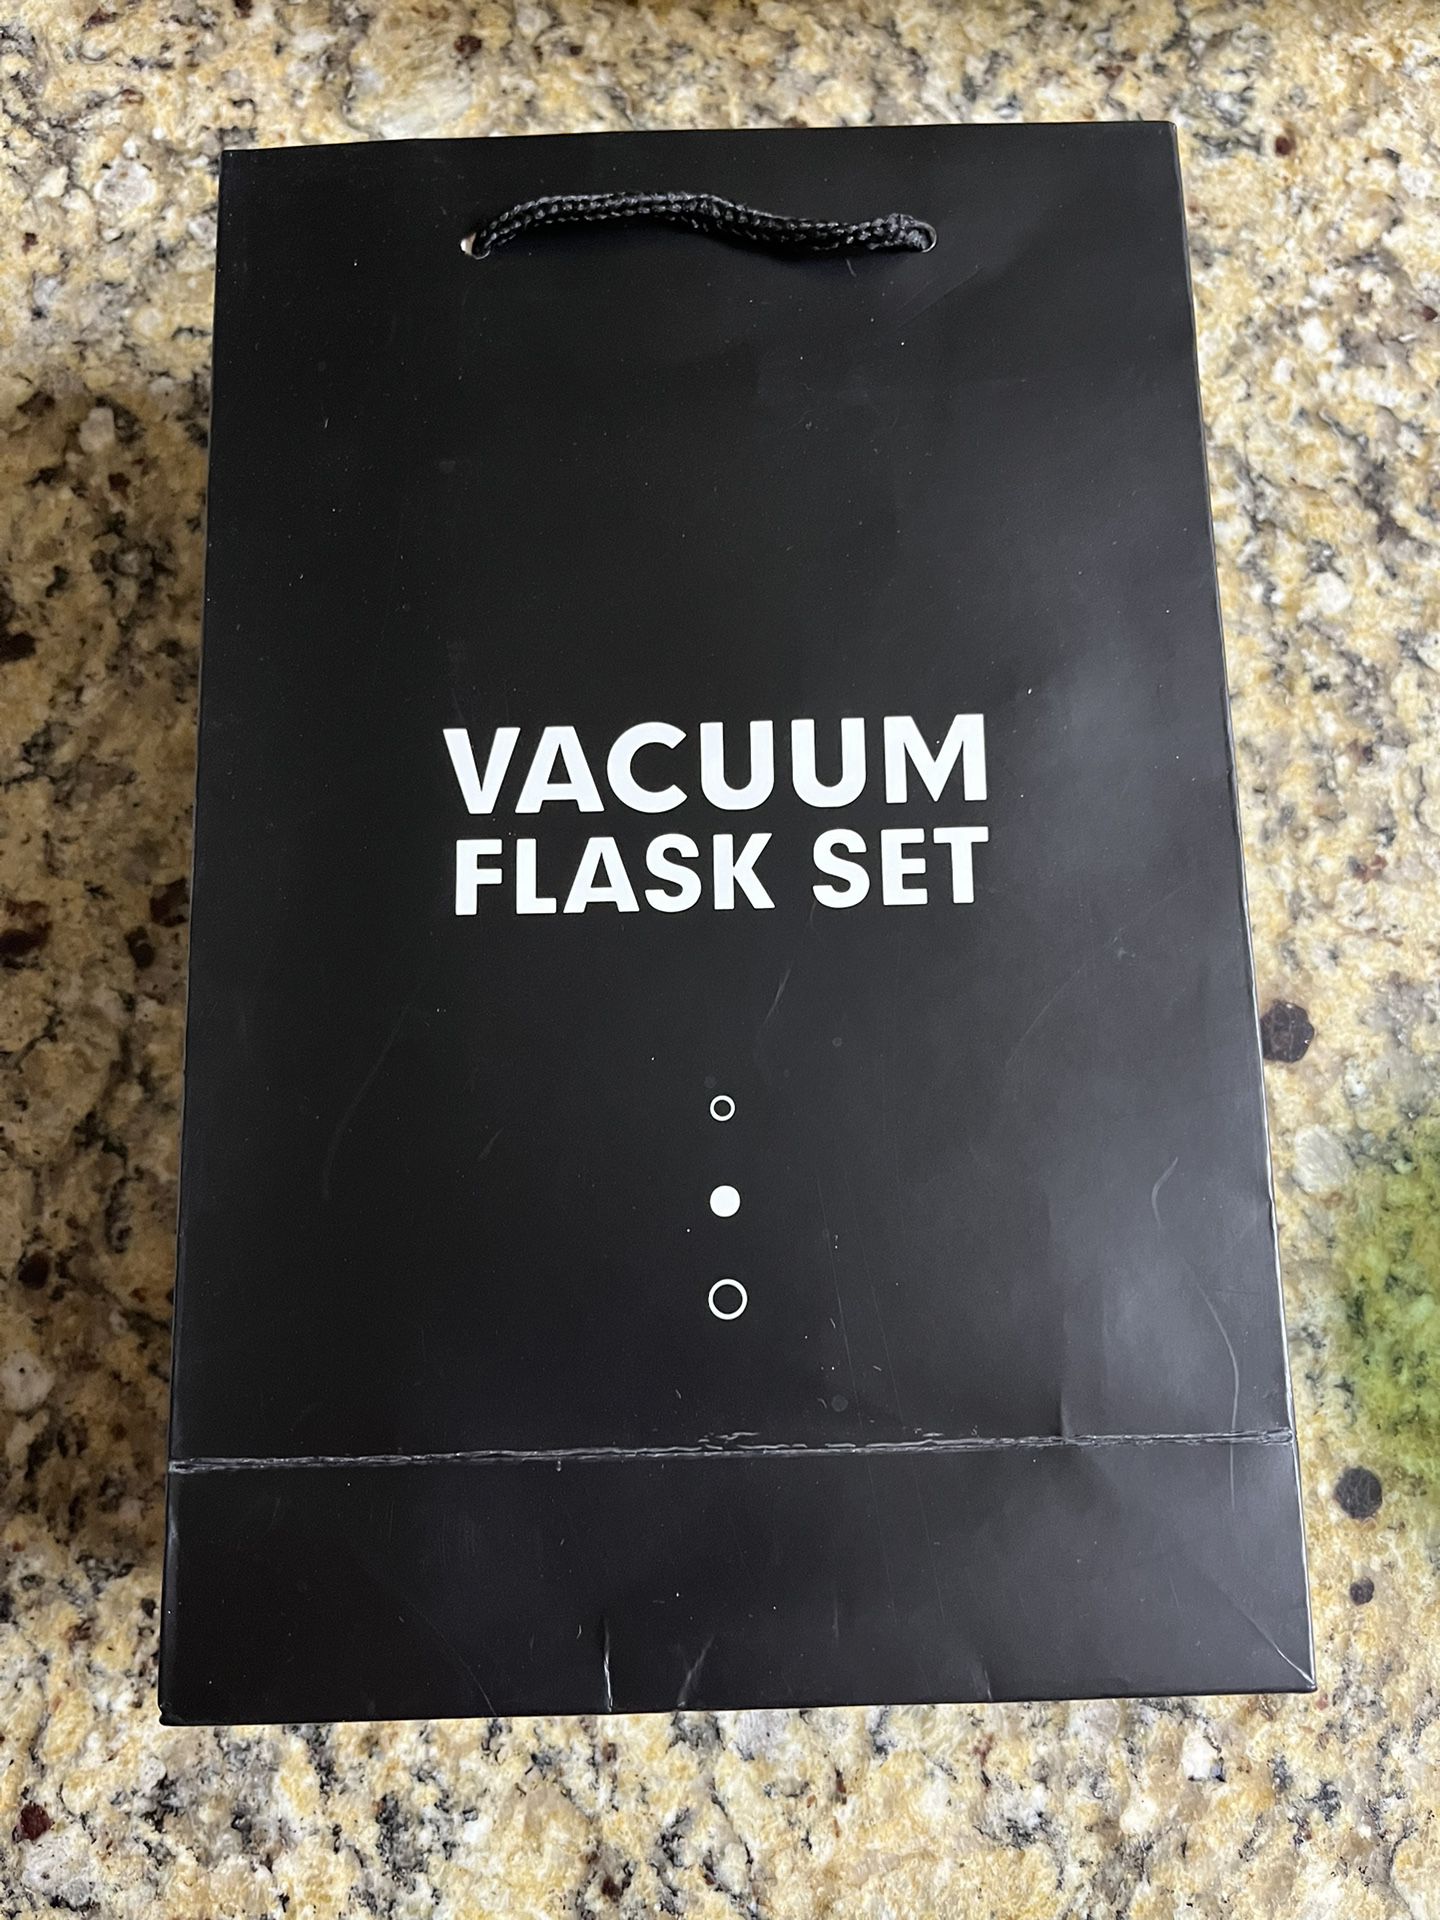 Vacuum Flask 